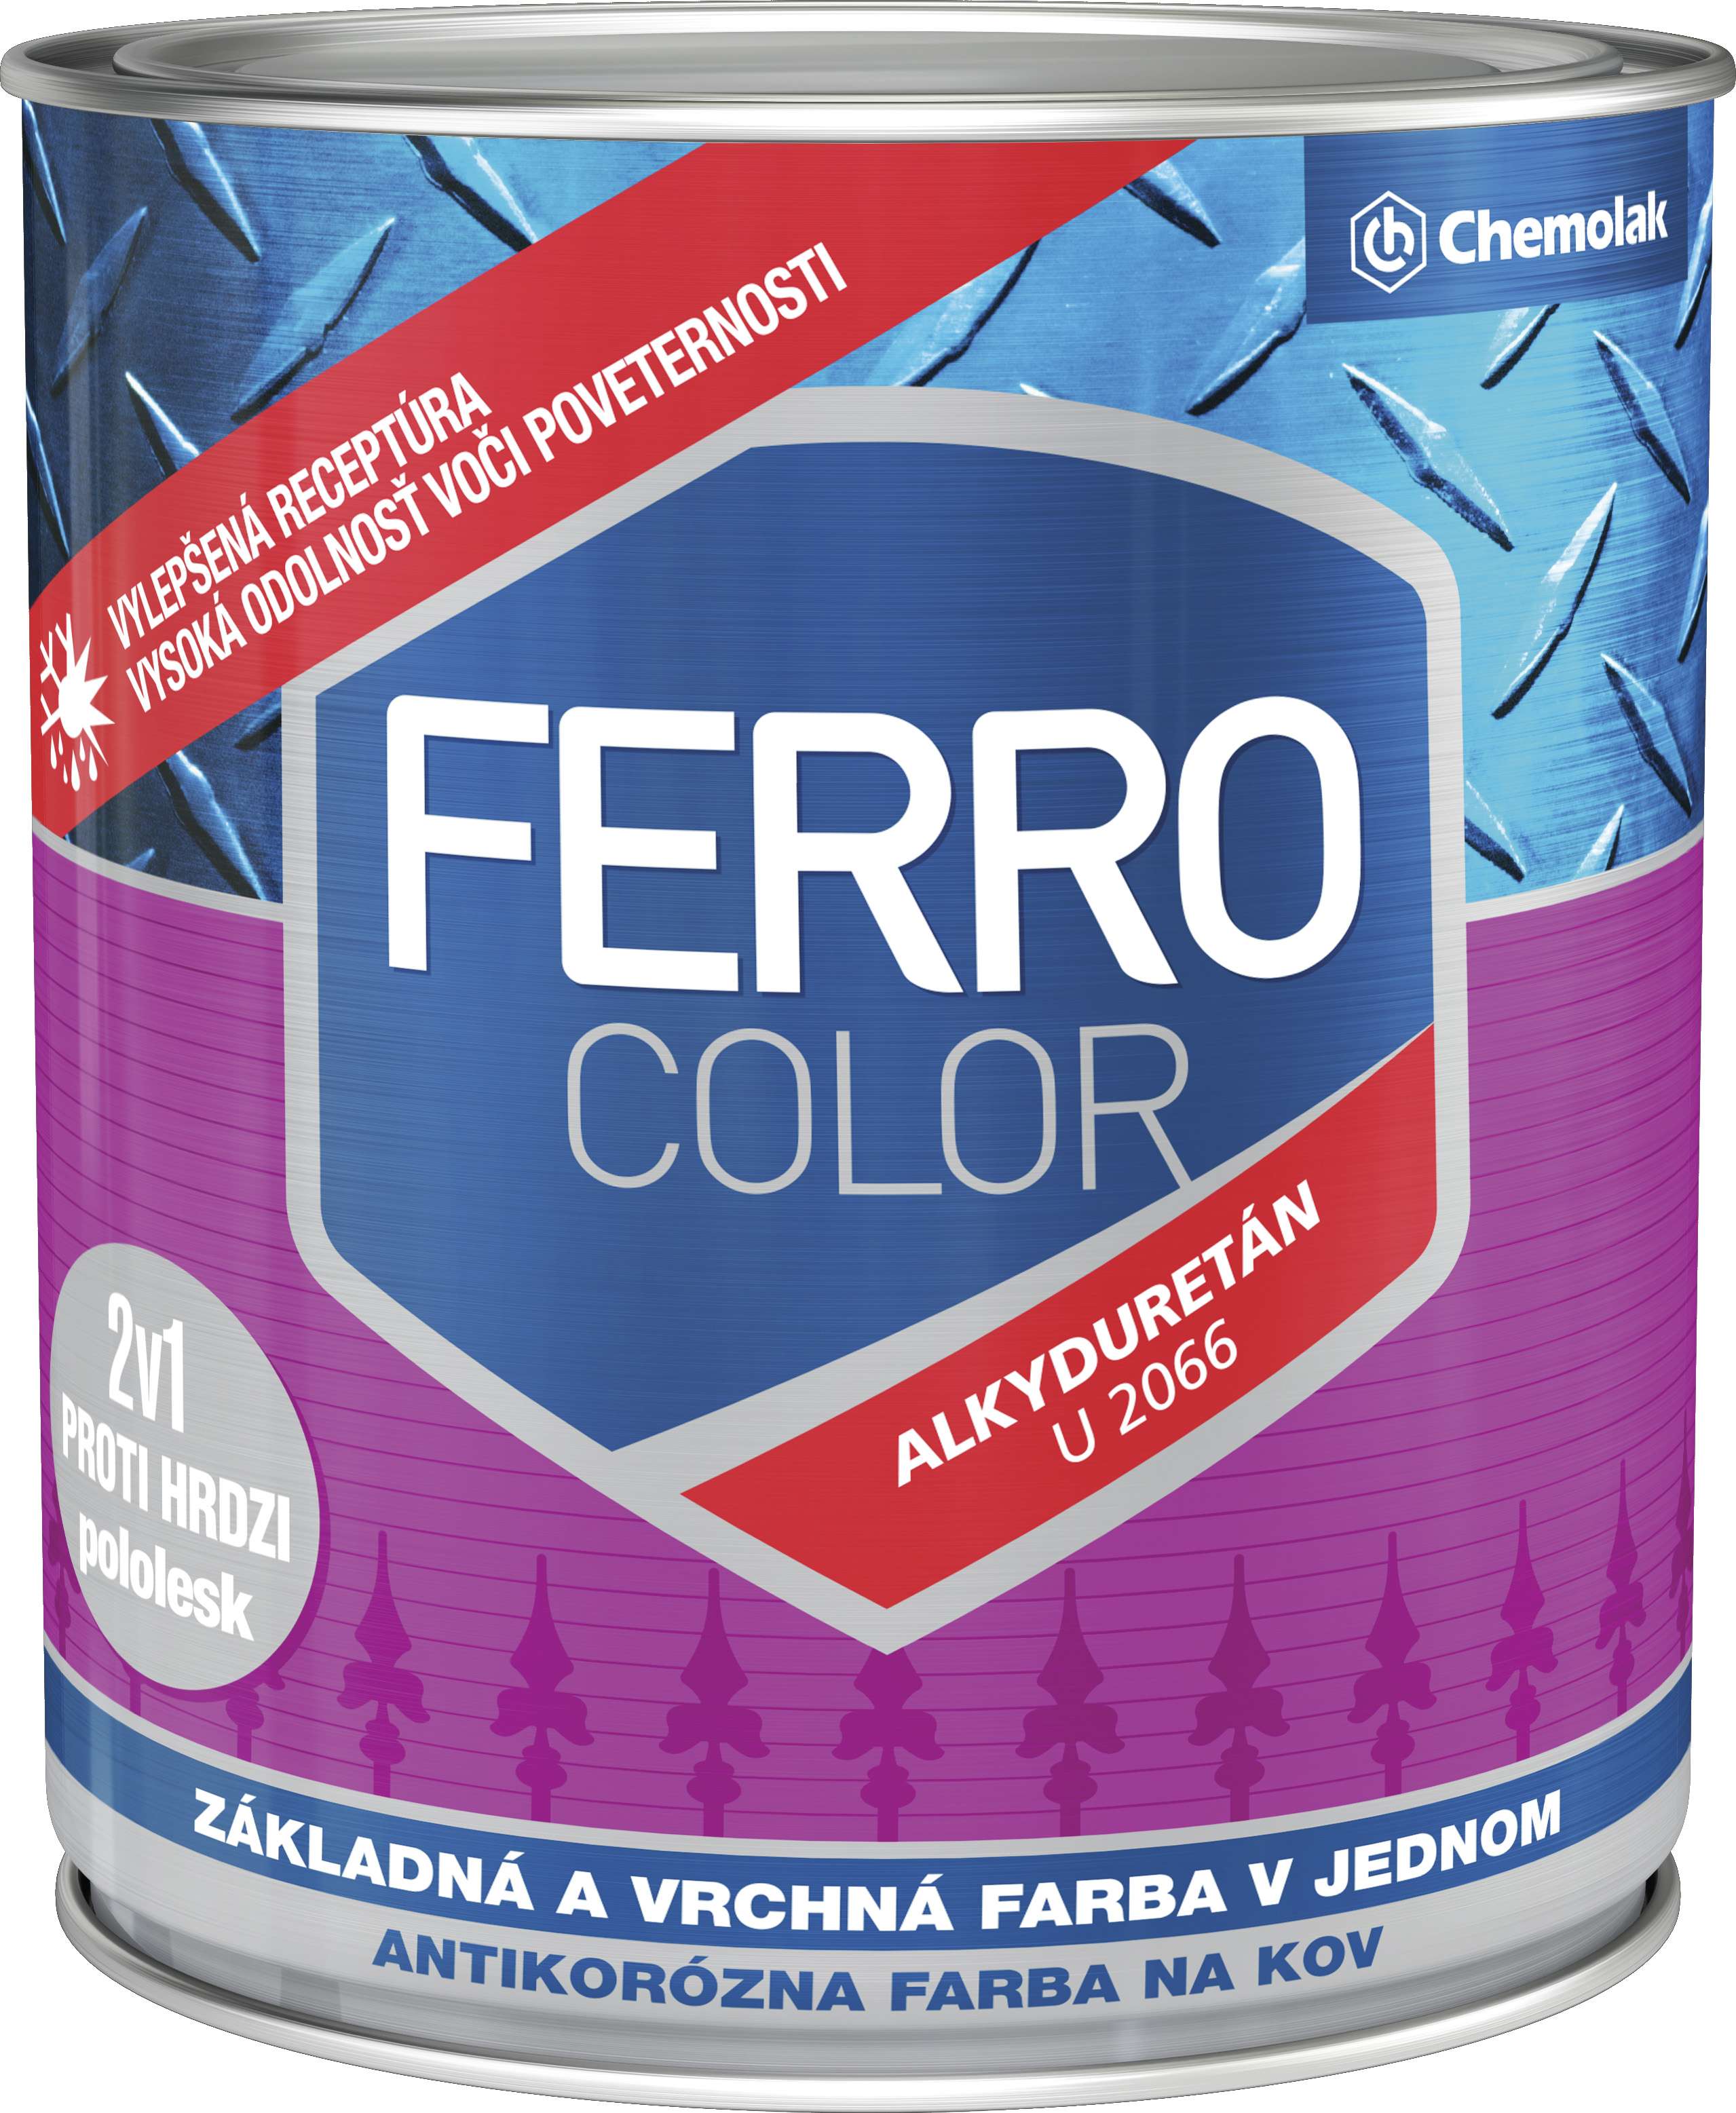 Chemolak Ferro Color U 2066 pololesk * základní a vrchní barva (2v1) - pololesklá 1